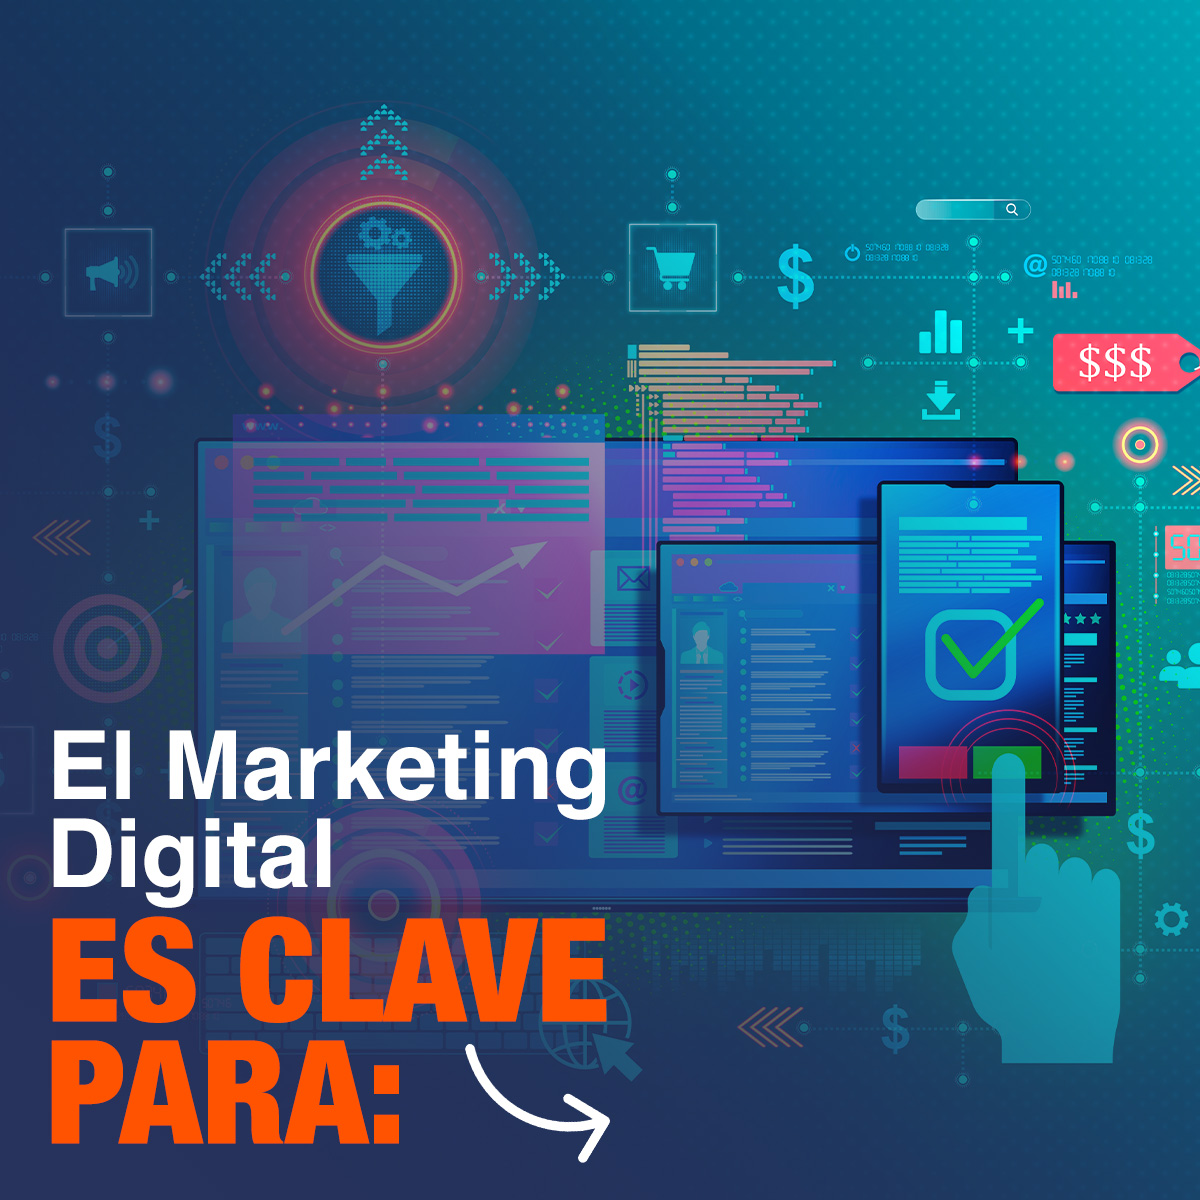 Carrusel El Marketing Digital es Clave Para: